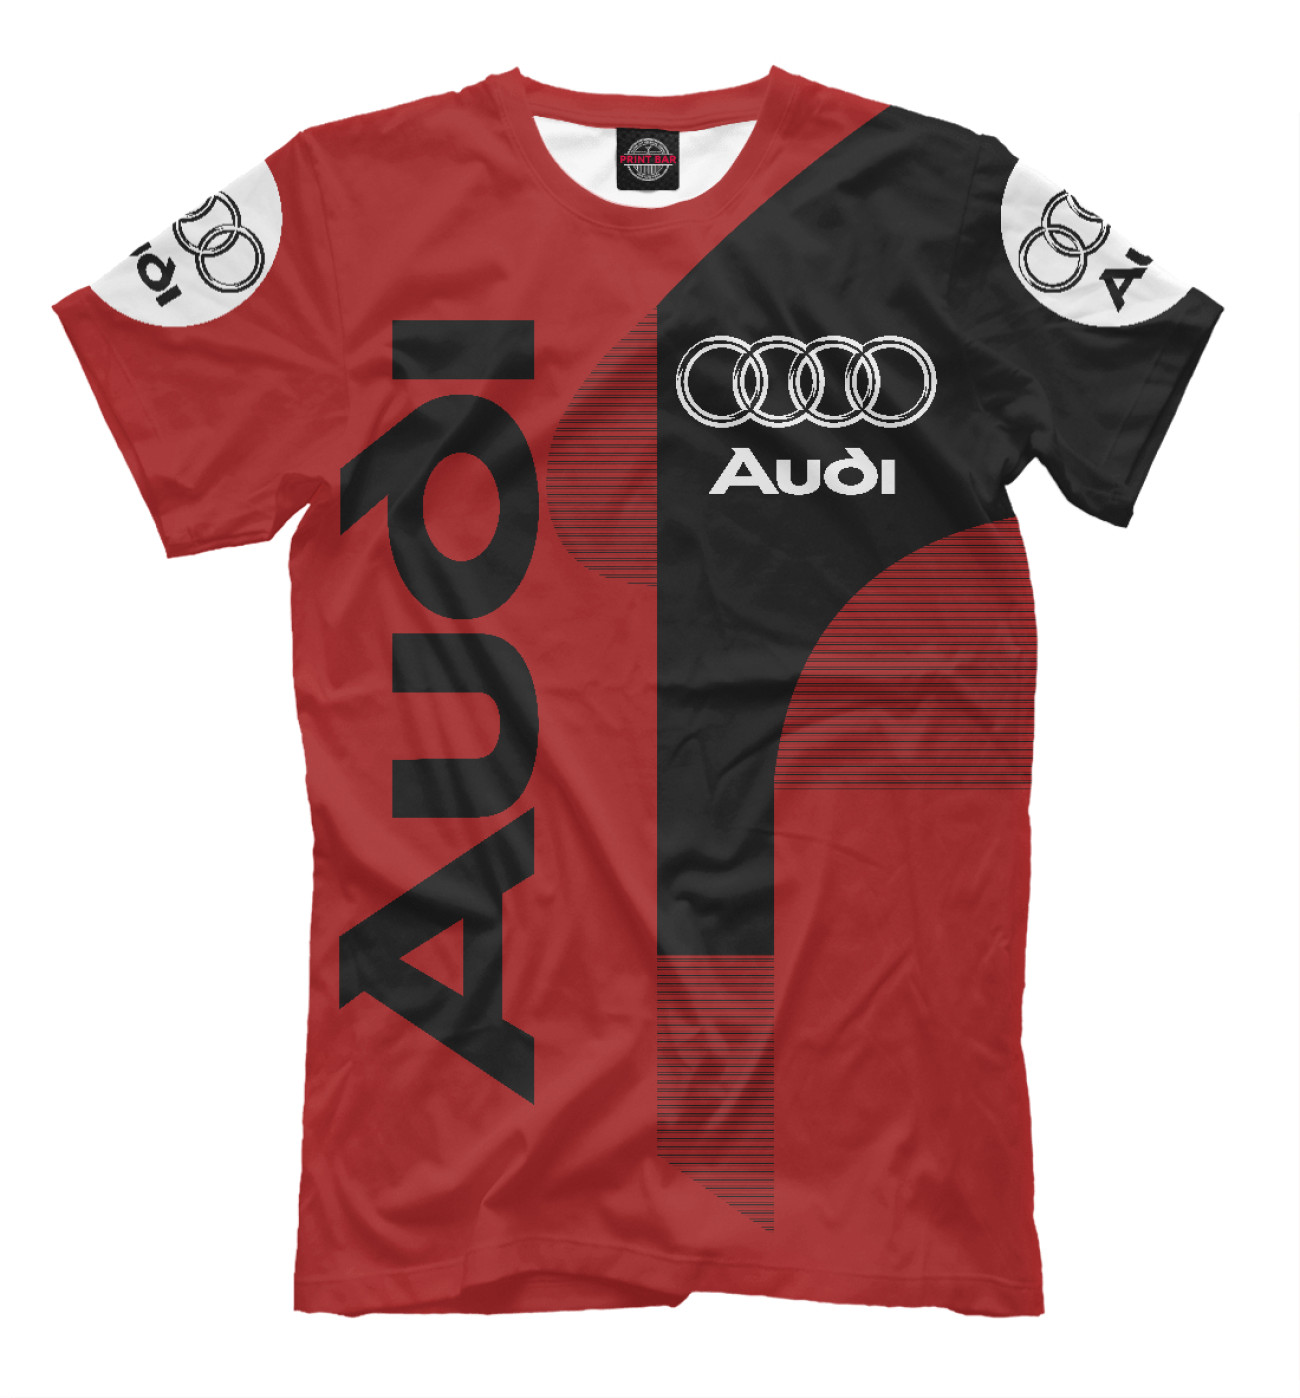 Мужская Футболка Audi, артикул: AUD-861916-fut-2